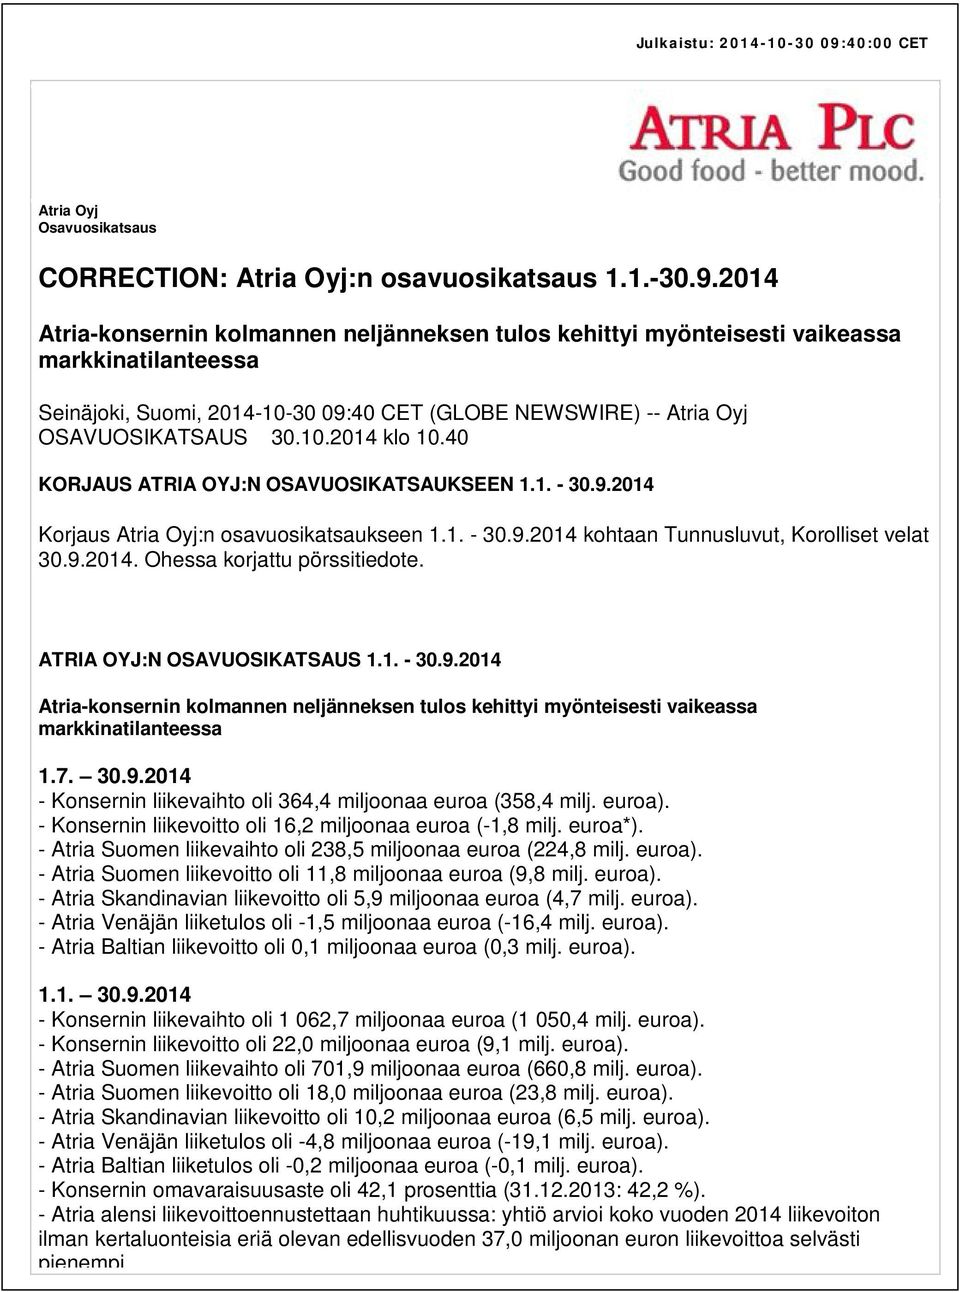 2014 Atria-konsernin kolmannen neljänneksen tulos kehittyi myönteisesti vaikeassa markkinatilanteessa Seinäjoki, Suomi, 2014-10-30 09:40 CET (GLOBE NEWSWIRE) -- Atria Oyj OSAVUOSIKATSAUS 30.10.2014 klo 10.